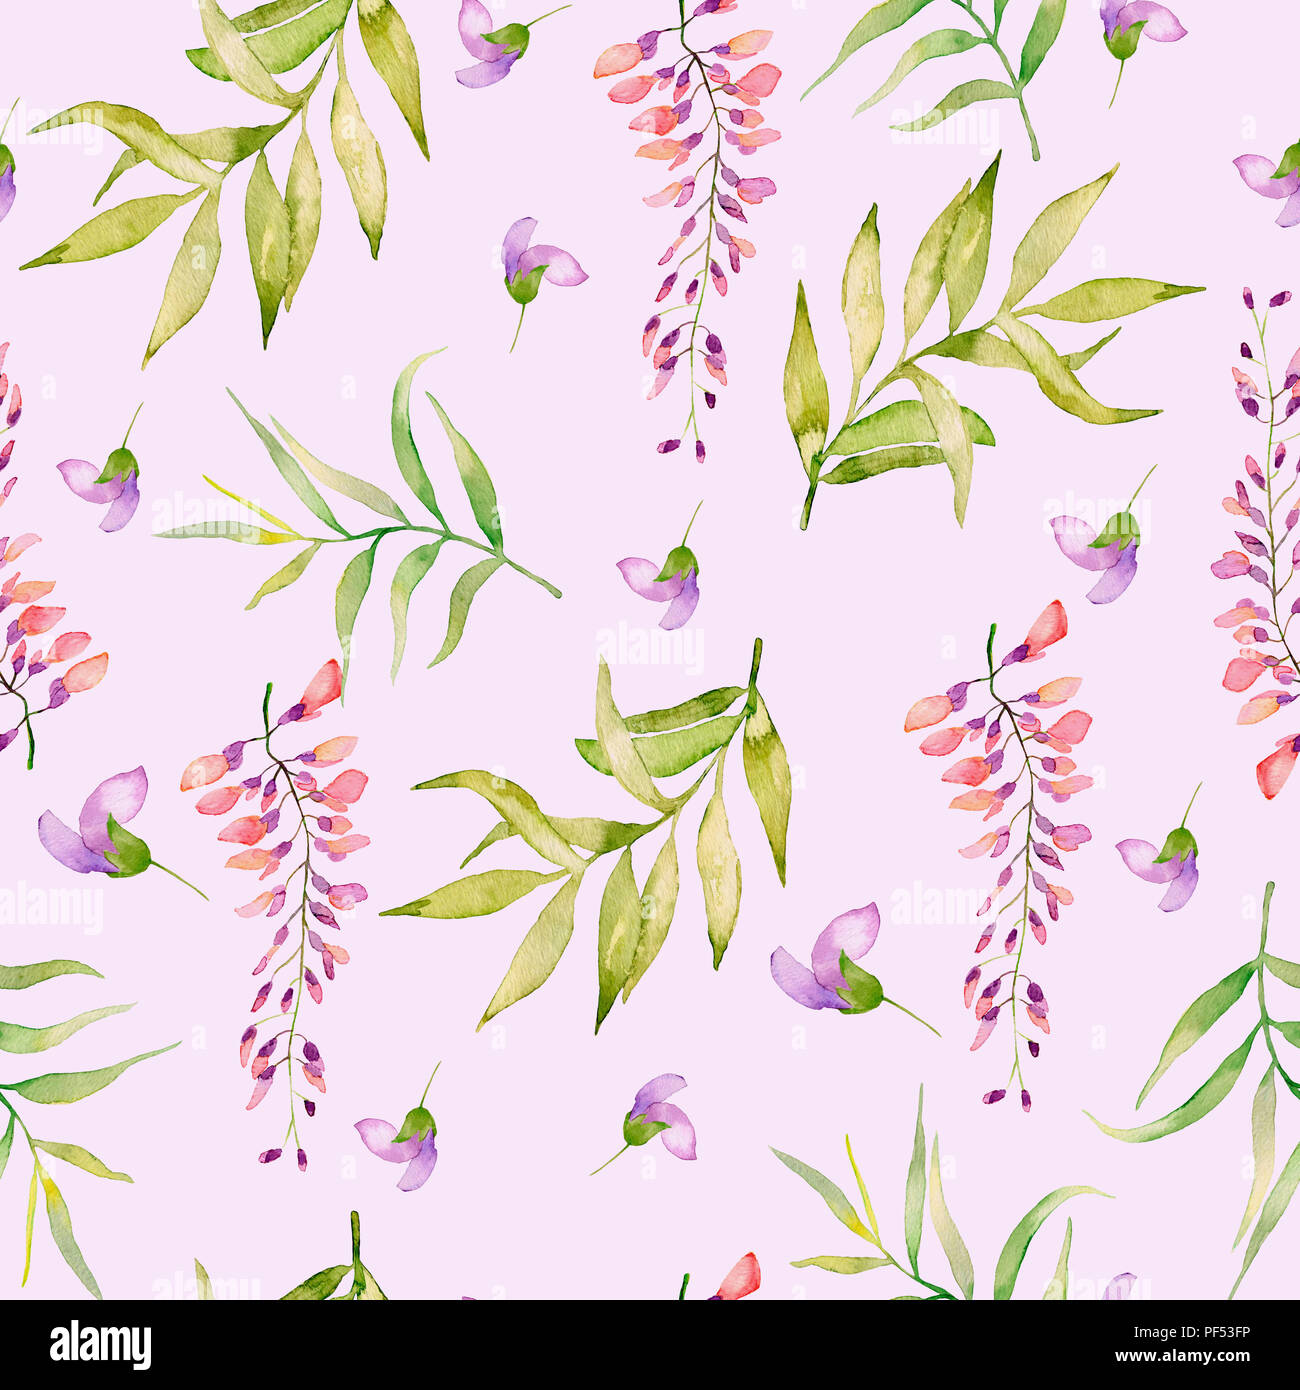 Aquarell nahtlose Muster der Sommer Blumen und Blätter auf einem hellen Hintergrund. Stockfoto